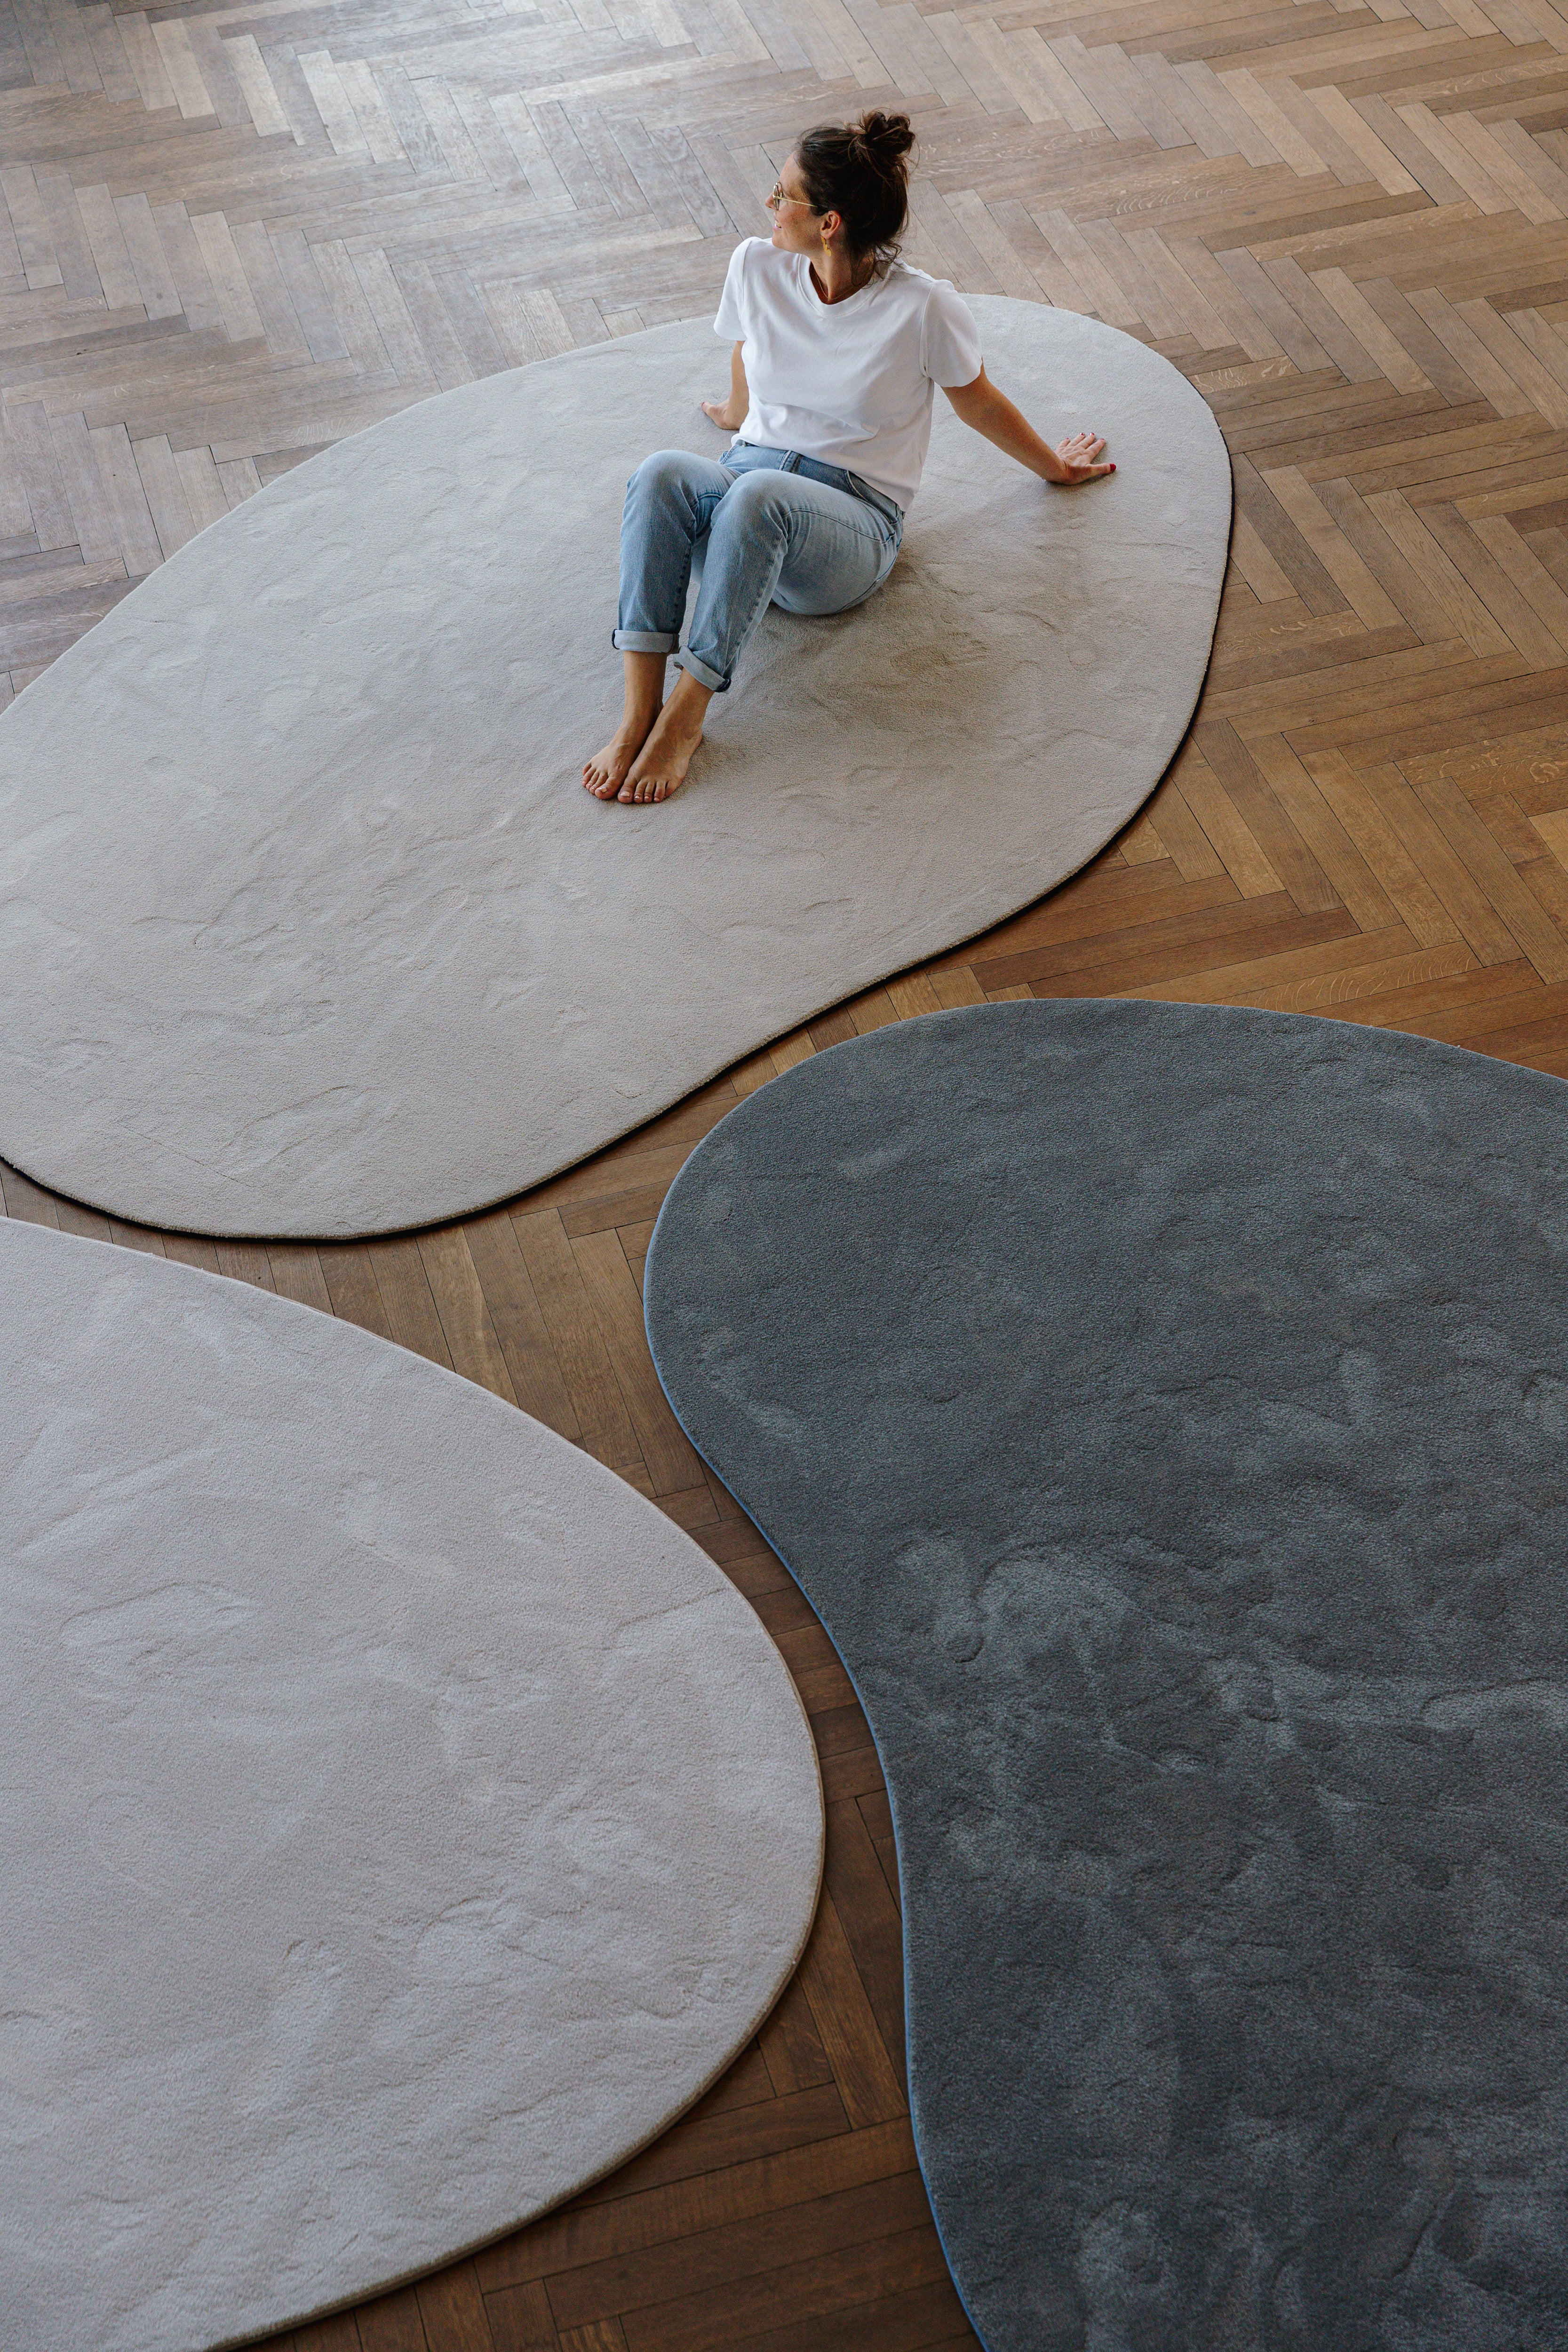 Vrouw (Jozefien Forton) zittend op collectie organische vormen tapijten Belgian soft design op parket vloer.